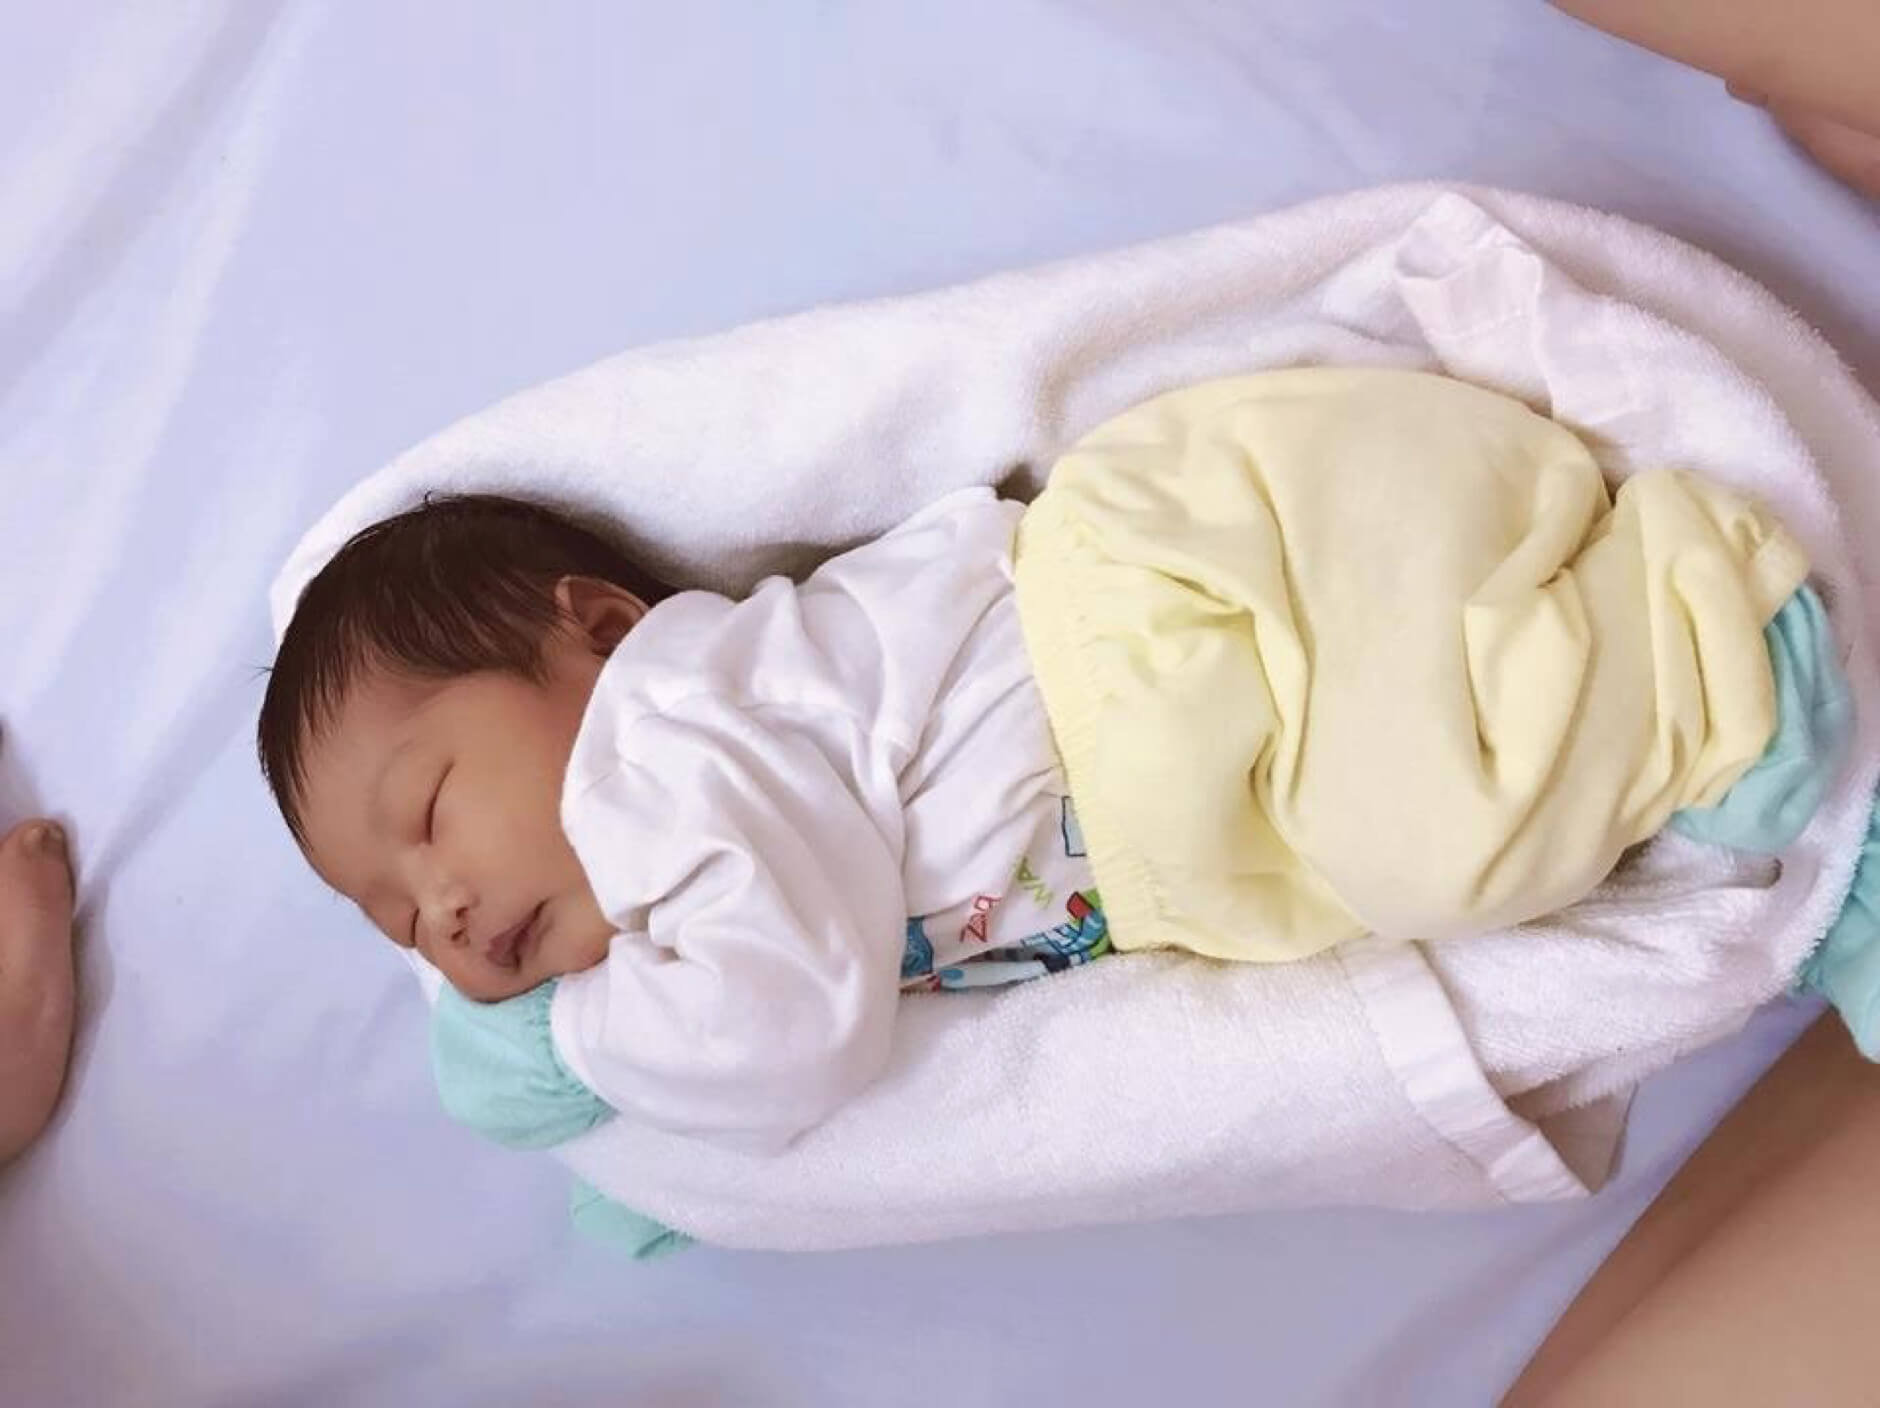 Quấn khăn tạo ổ giúp bé ngủ ngon hơn trong tư thế nằm nghiêng